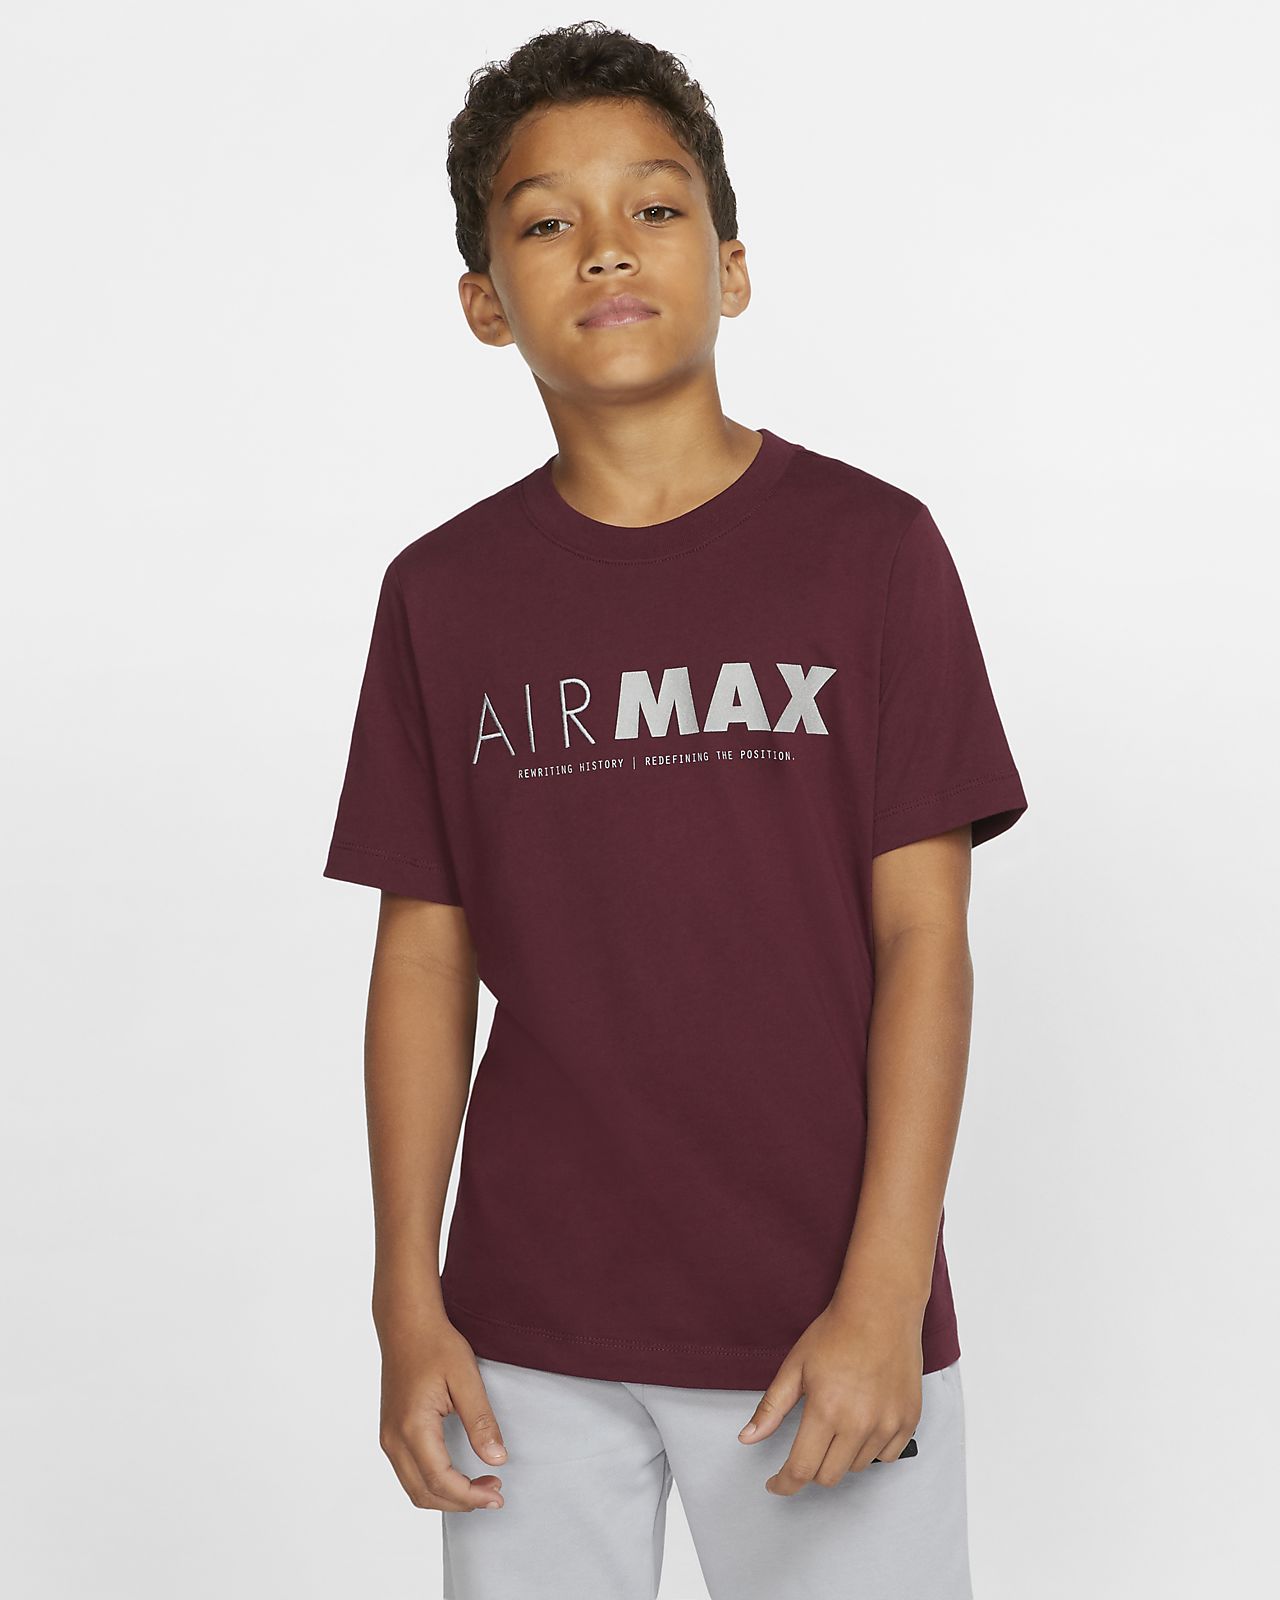 airmax t shirt